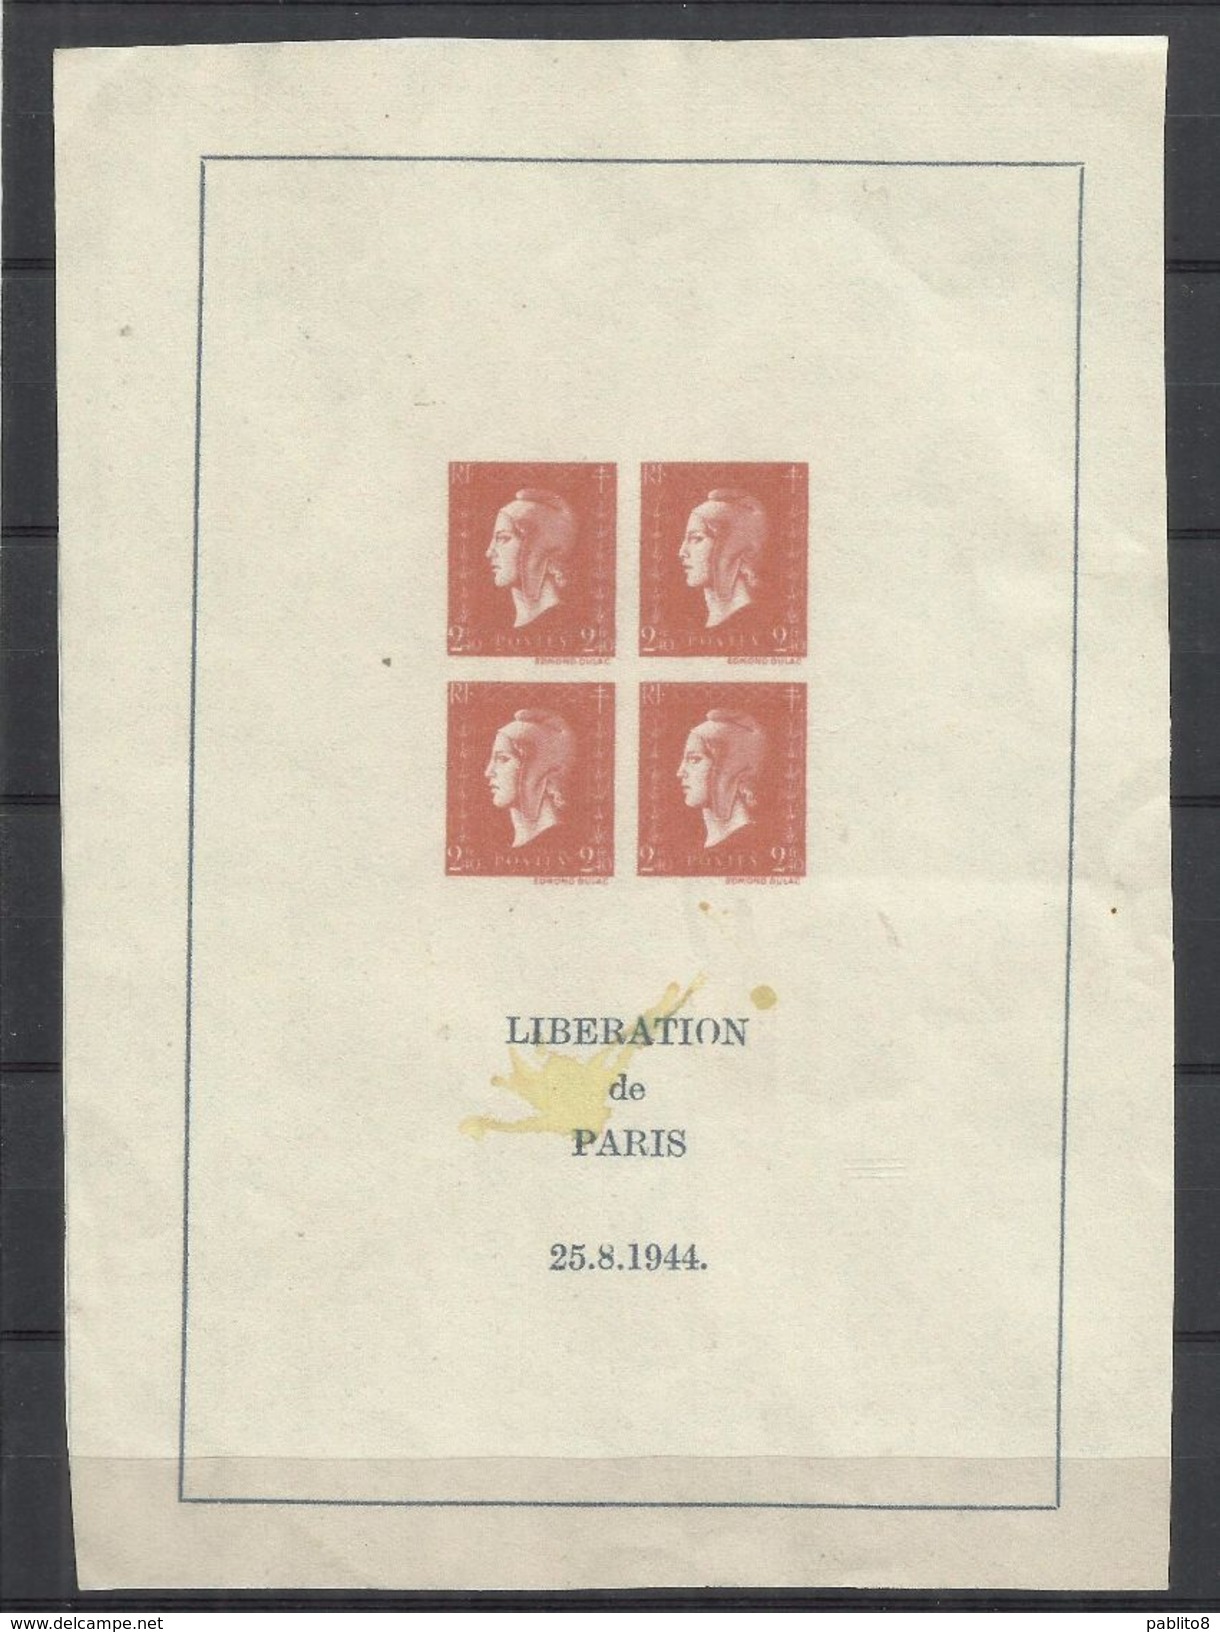 FRANCIA FRANCE 1945 LIBERATION DE PARIS 25.8.1944 BLOCK SHEET BLOC FEUILLET BLOCCO FOGLIETTO NG SG - Mint/Hinged